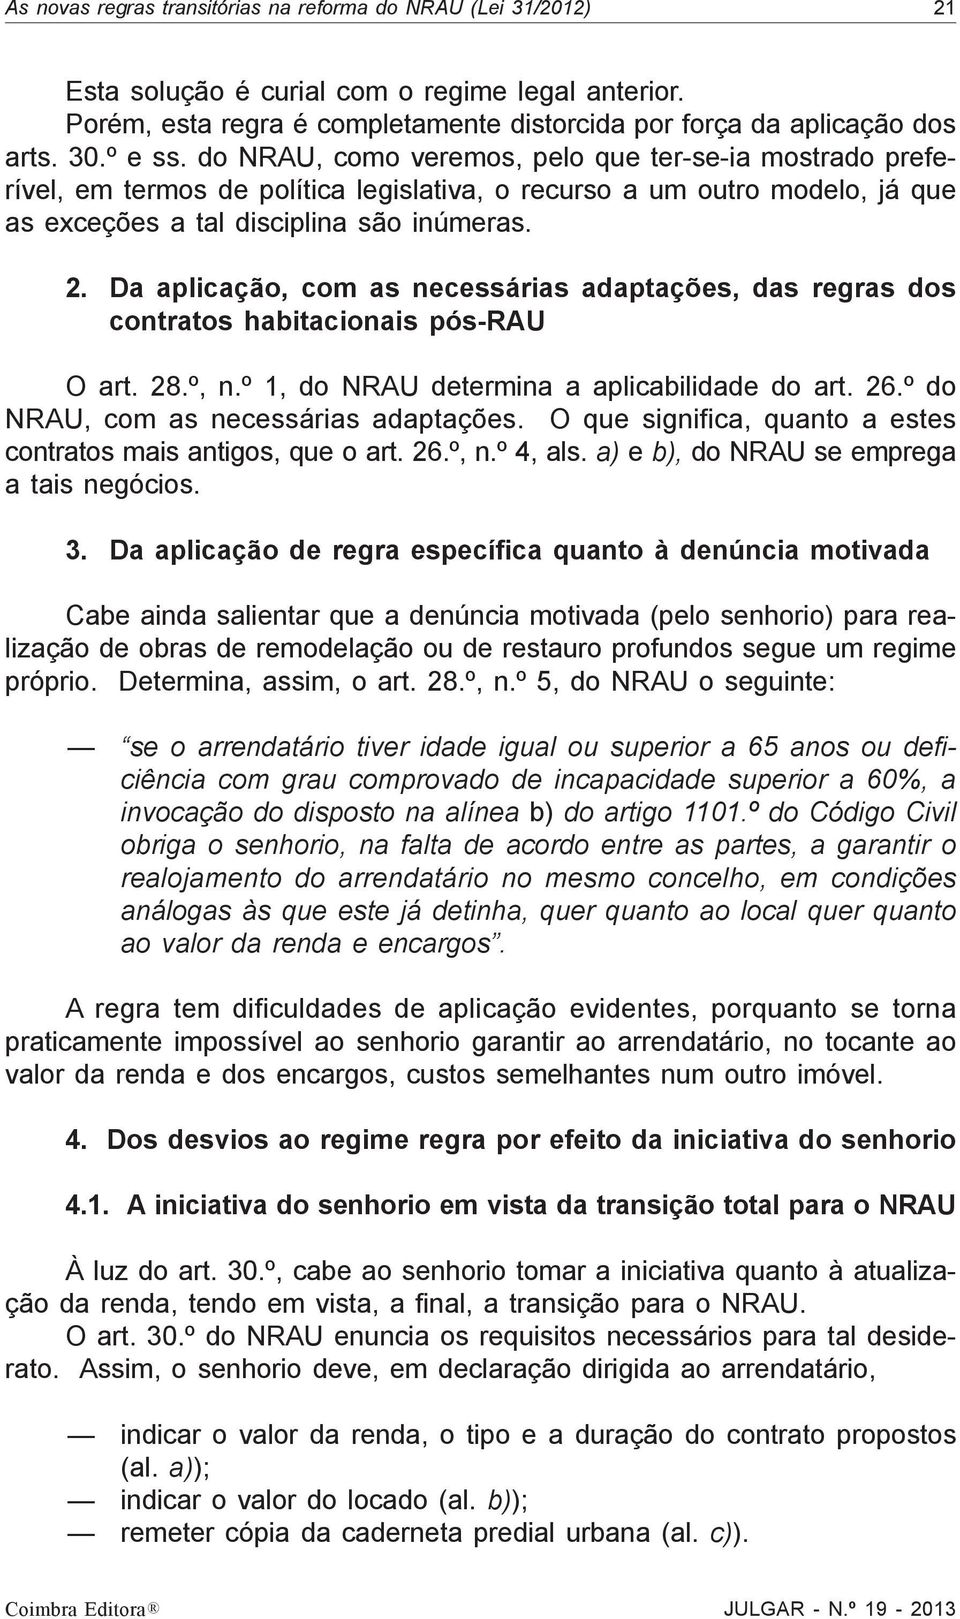 Da aplicação, com as necessárias adaptações, das regras dos contratos habitacionais pós-rau O art. 28.º, n.º 1, do NRAU determina a aplicabilidade do art. 26.º do NRAU, com as necessárias adaptações.